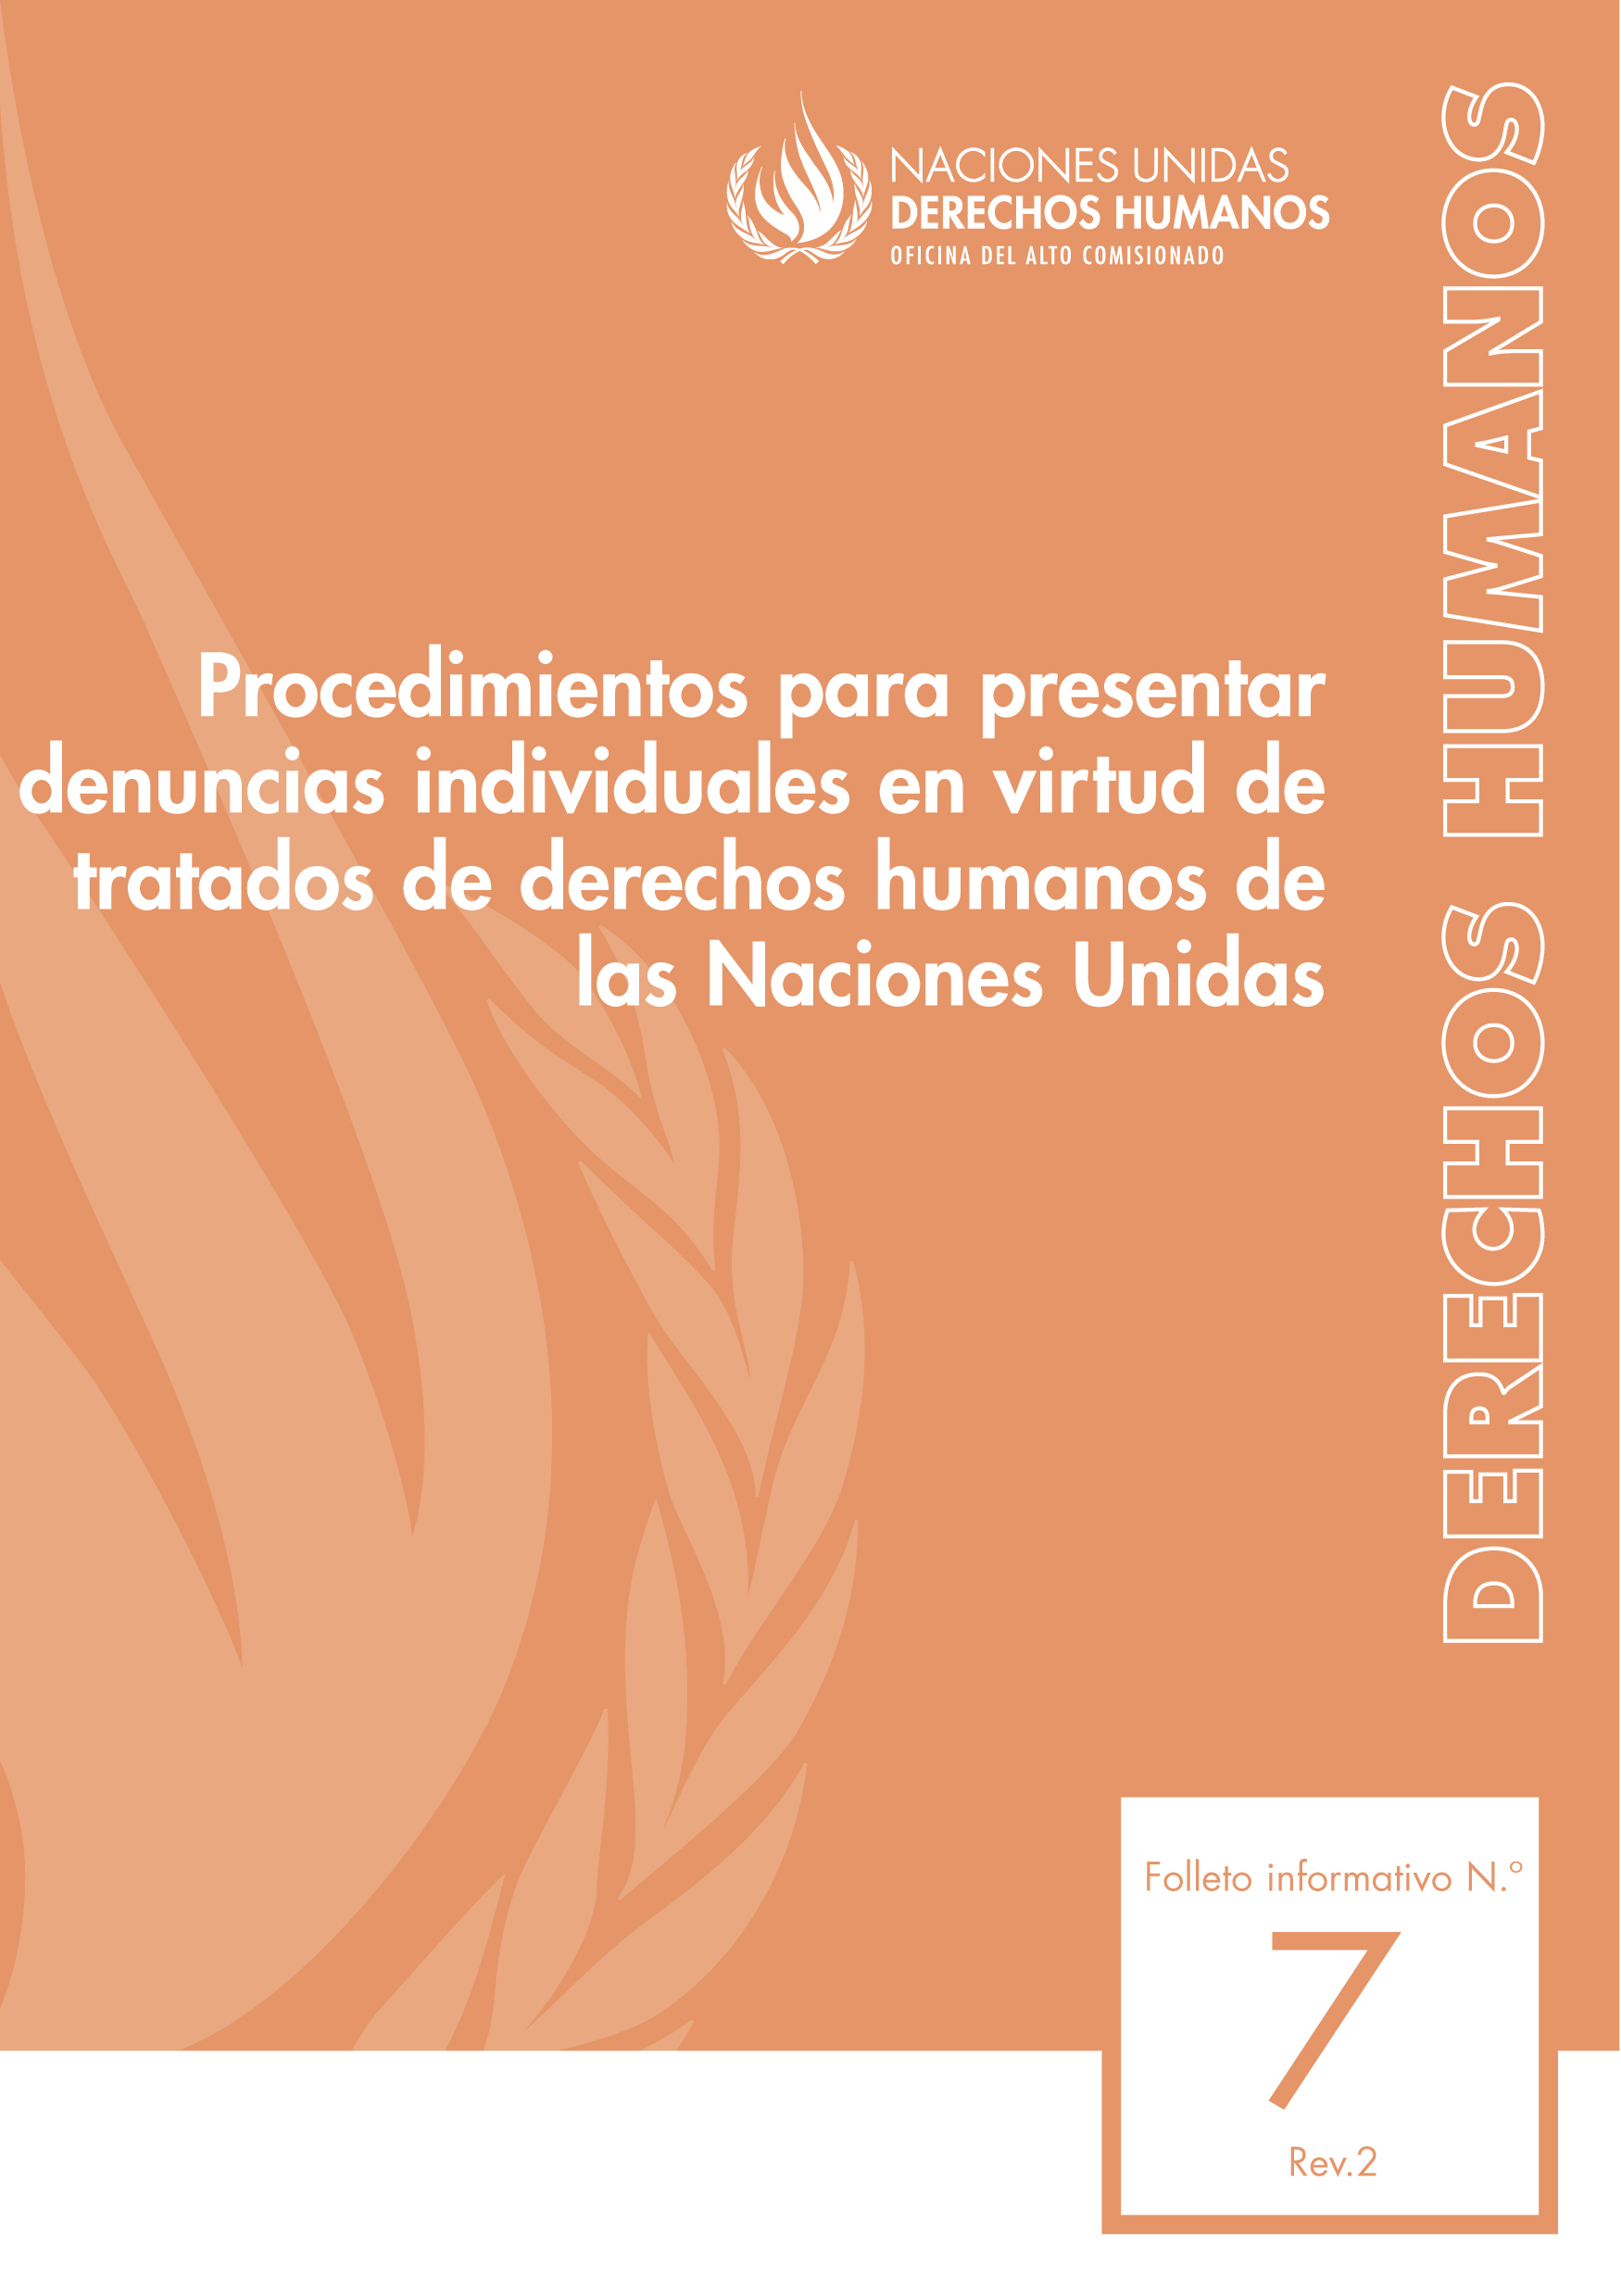 image of Derechos humanos folleto informativo No. 7, Rev. 2